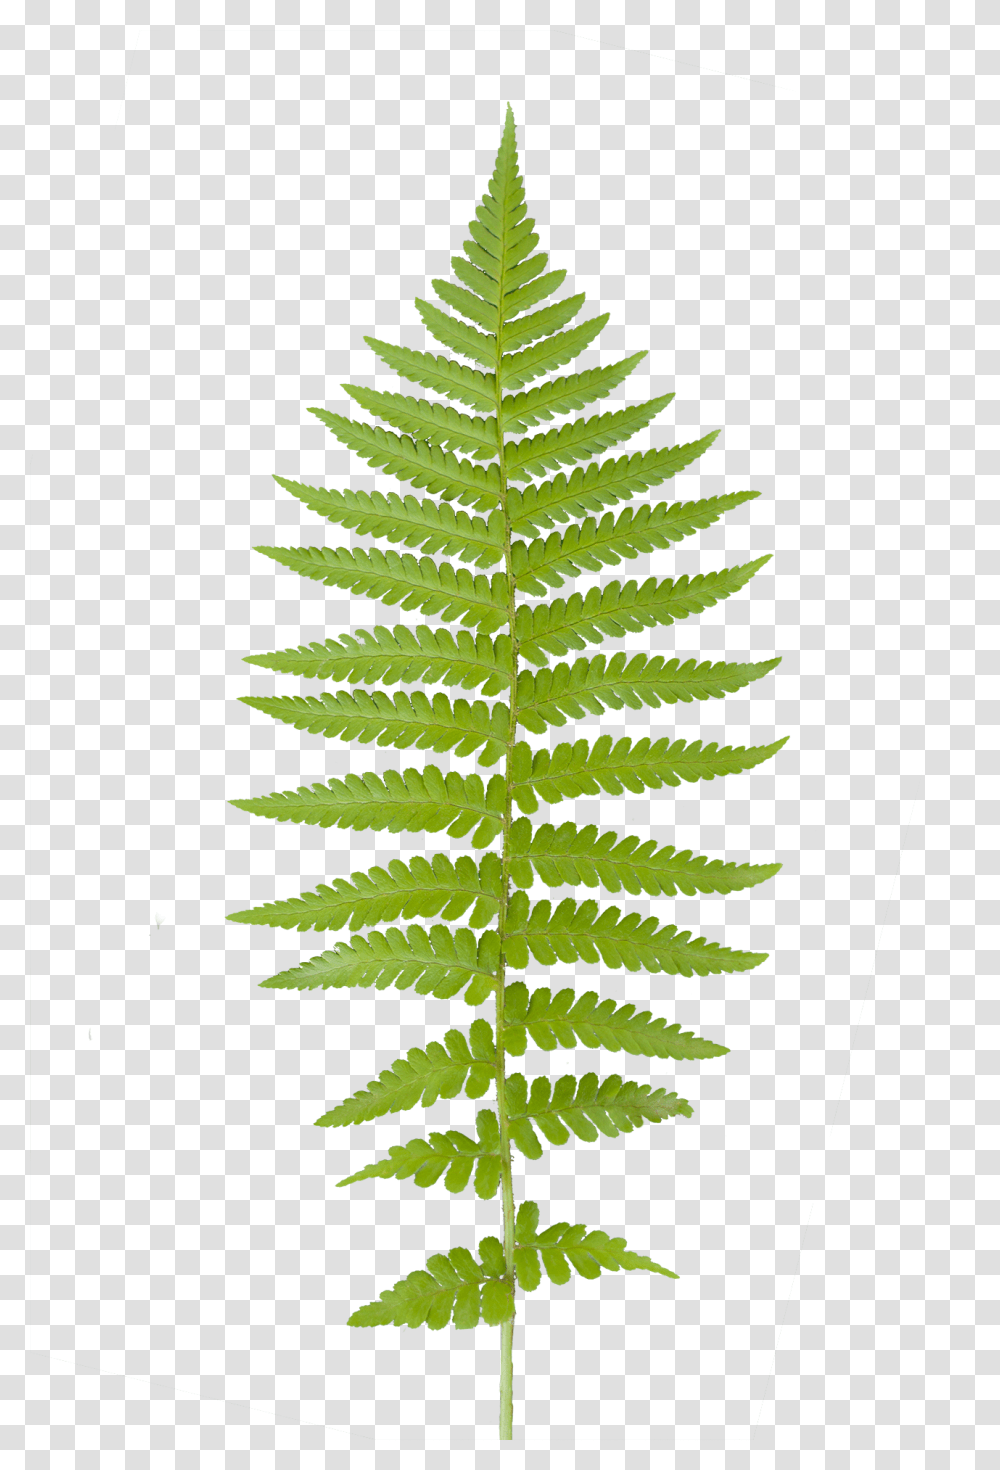 Paramecijs Vegetation Base Texture Pack, Plant, Fern, Leaf, Rug Transparent Png